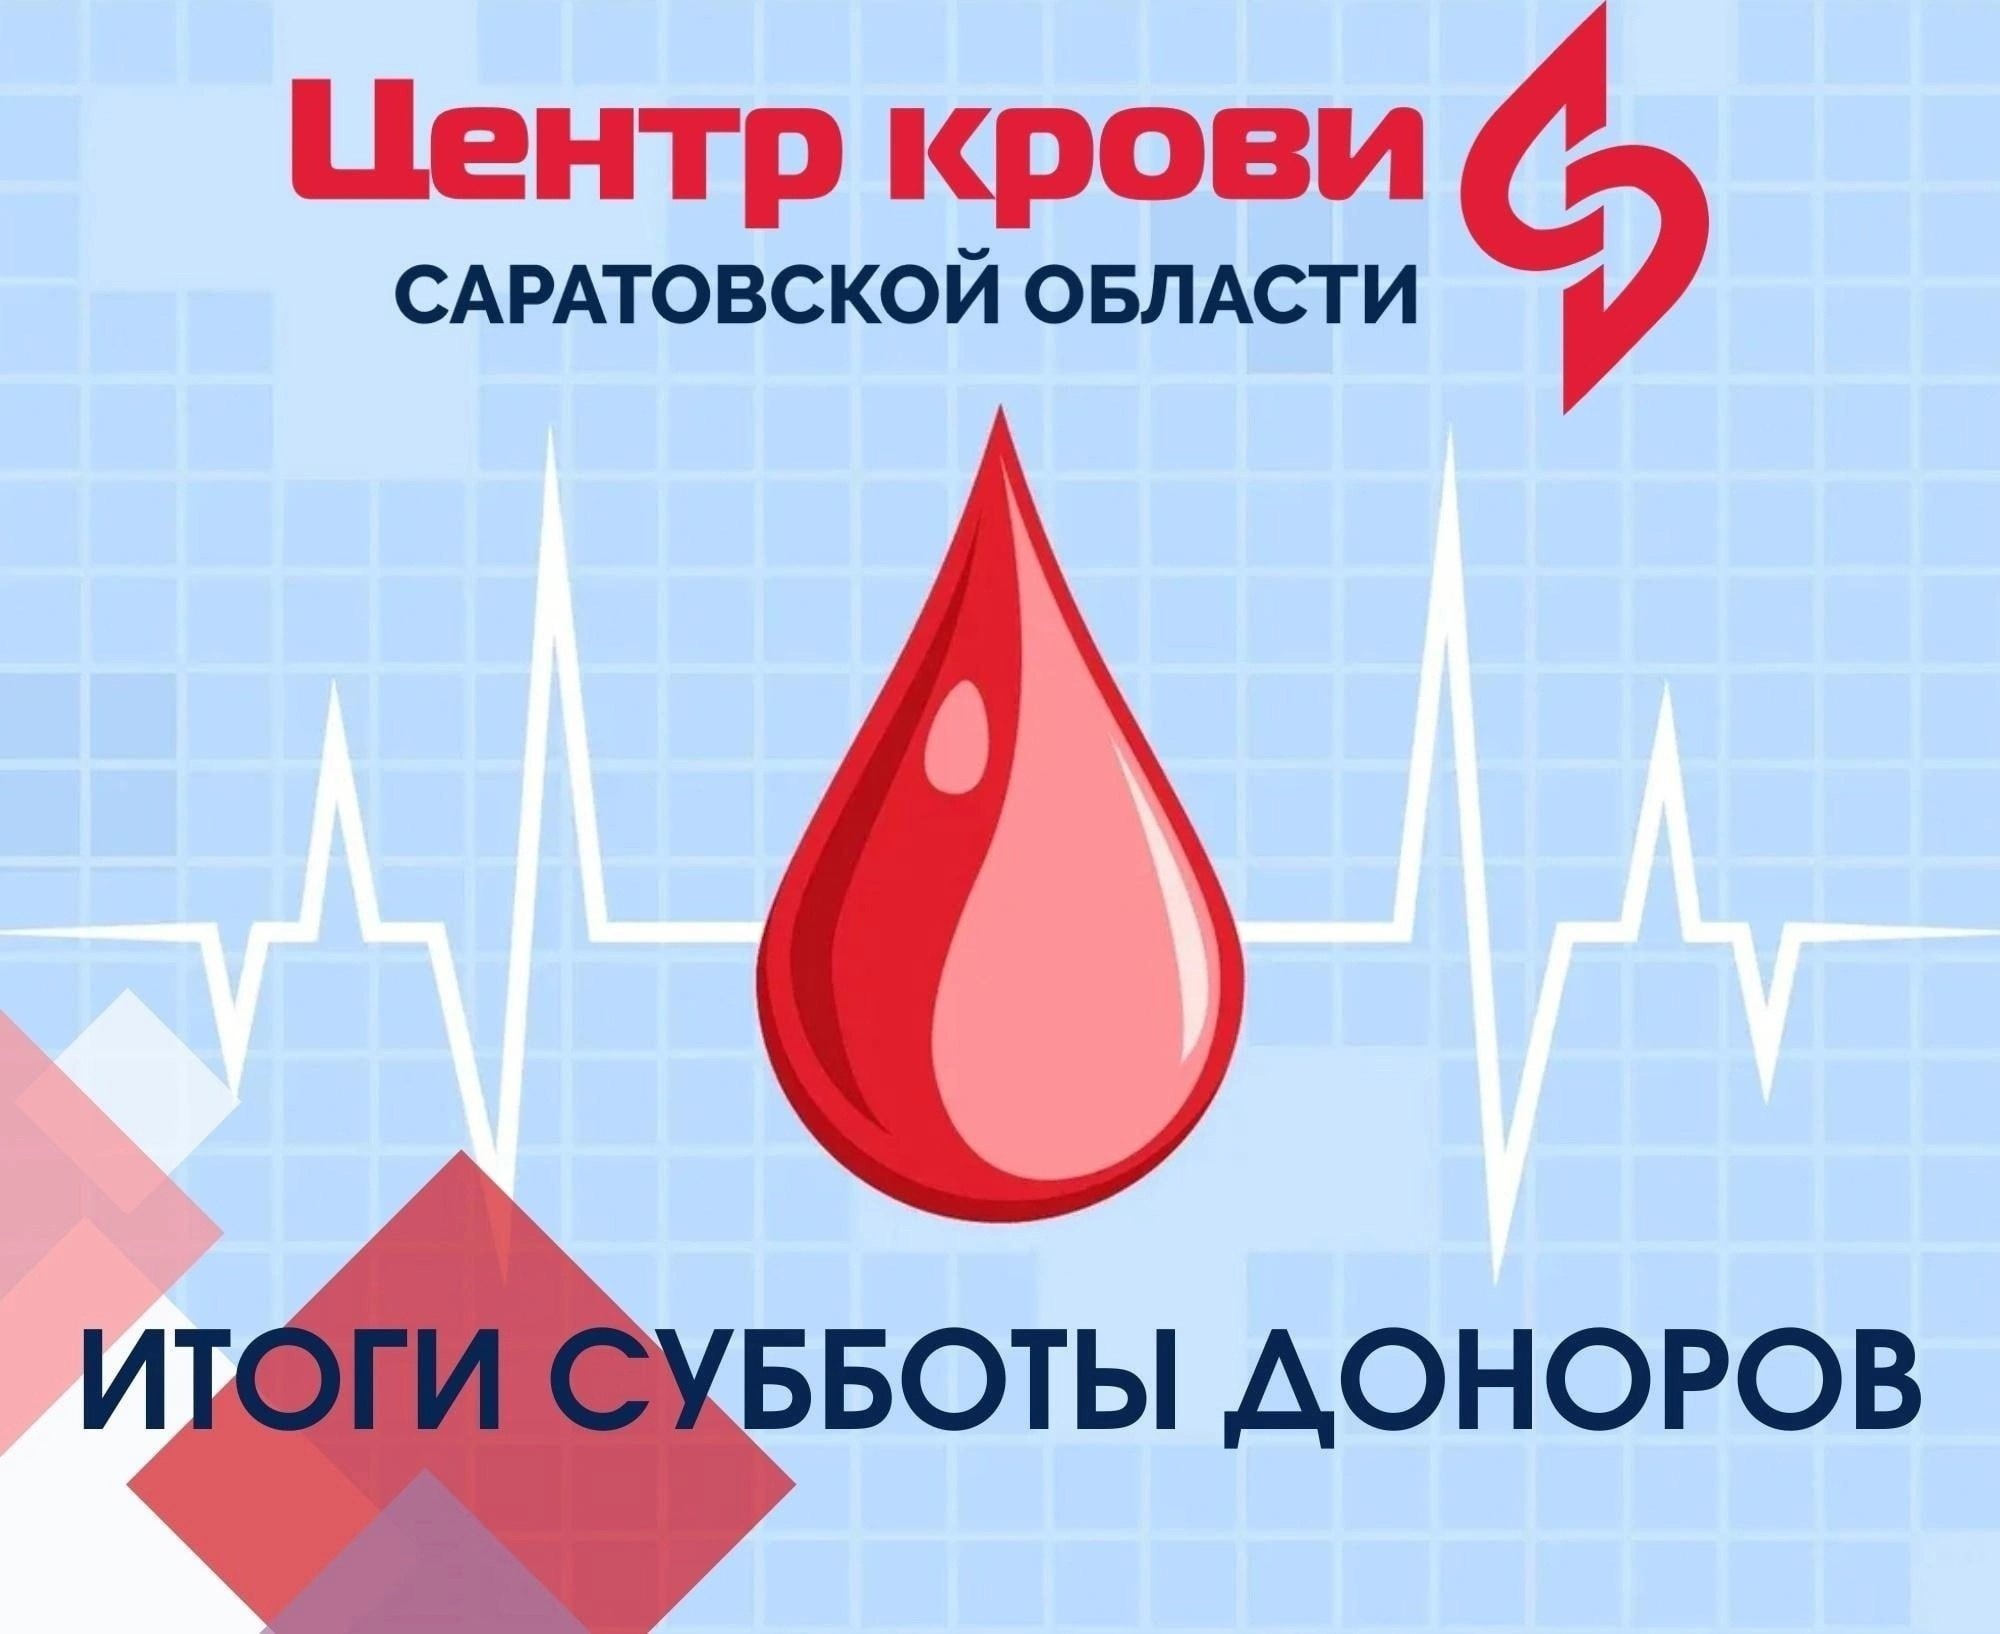 Донорство крови. Донорская суббота. Доноры крови ЕГЭ. Донорство крови интервал.